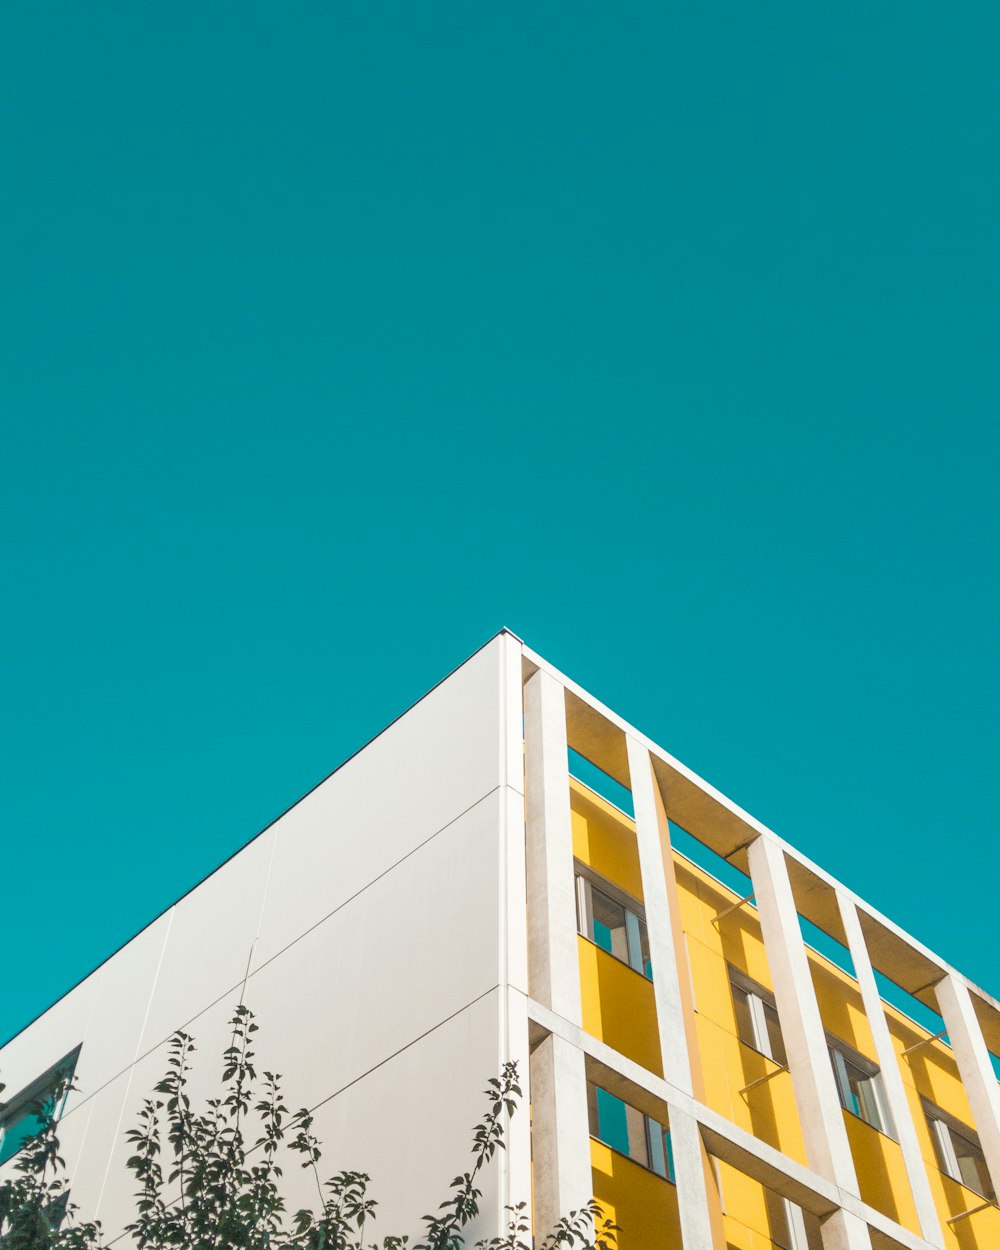 fotografia ad angolo basso di un edificio in cemento bianco e giallo